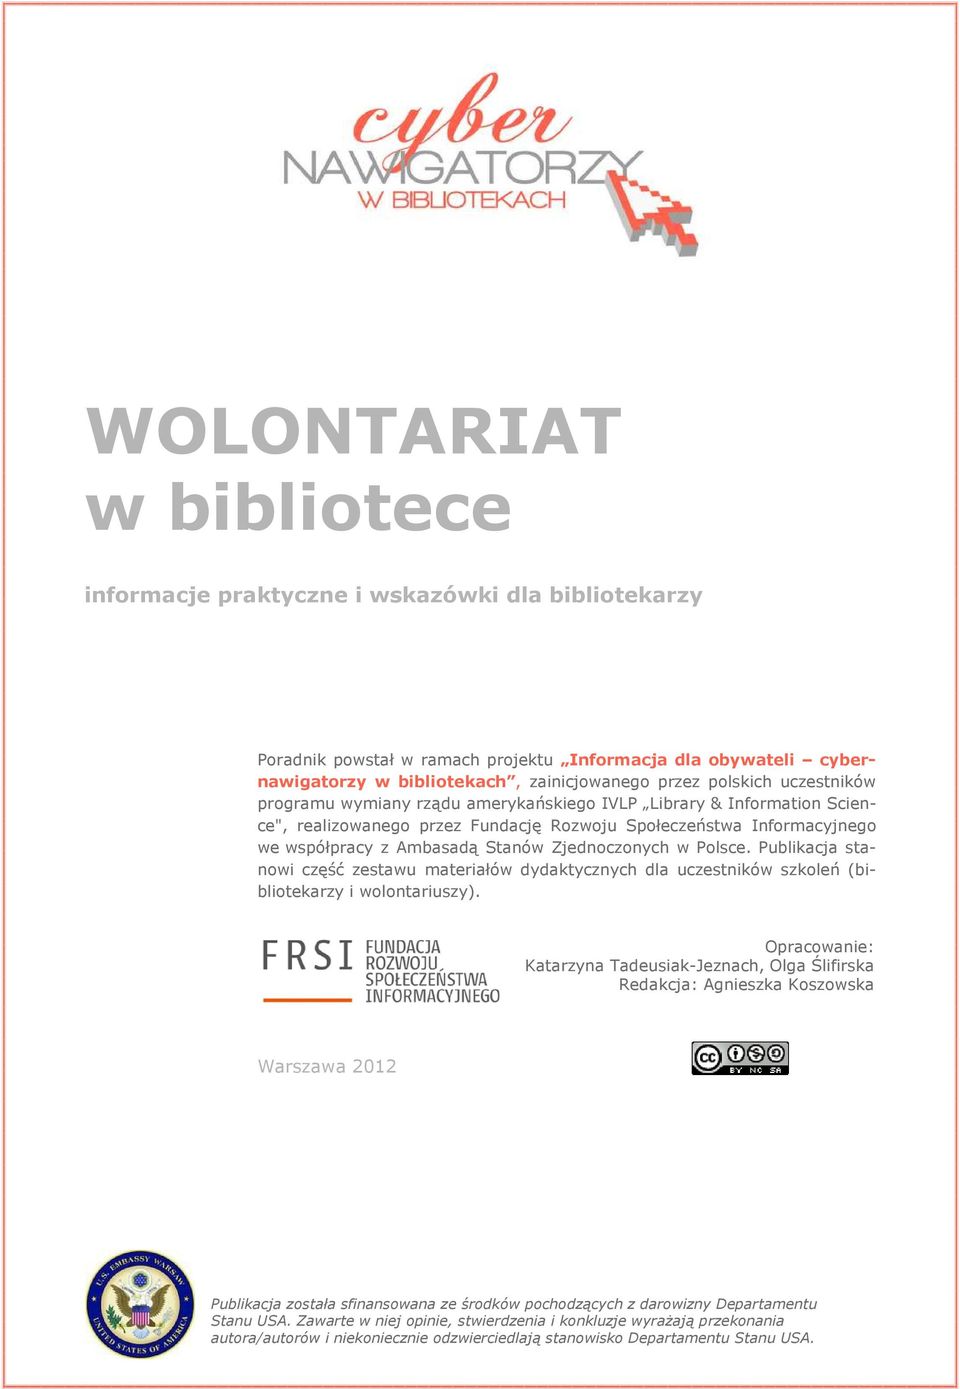 w Polsce. Publikacja stanowi część zestawu materiałów dydaktycznych dla uczestników szkoleń (bibliotekarzy i wolontariuszy).